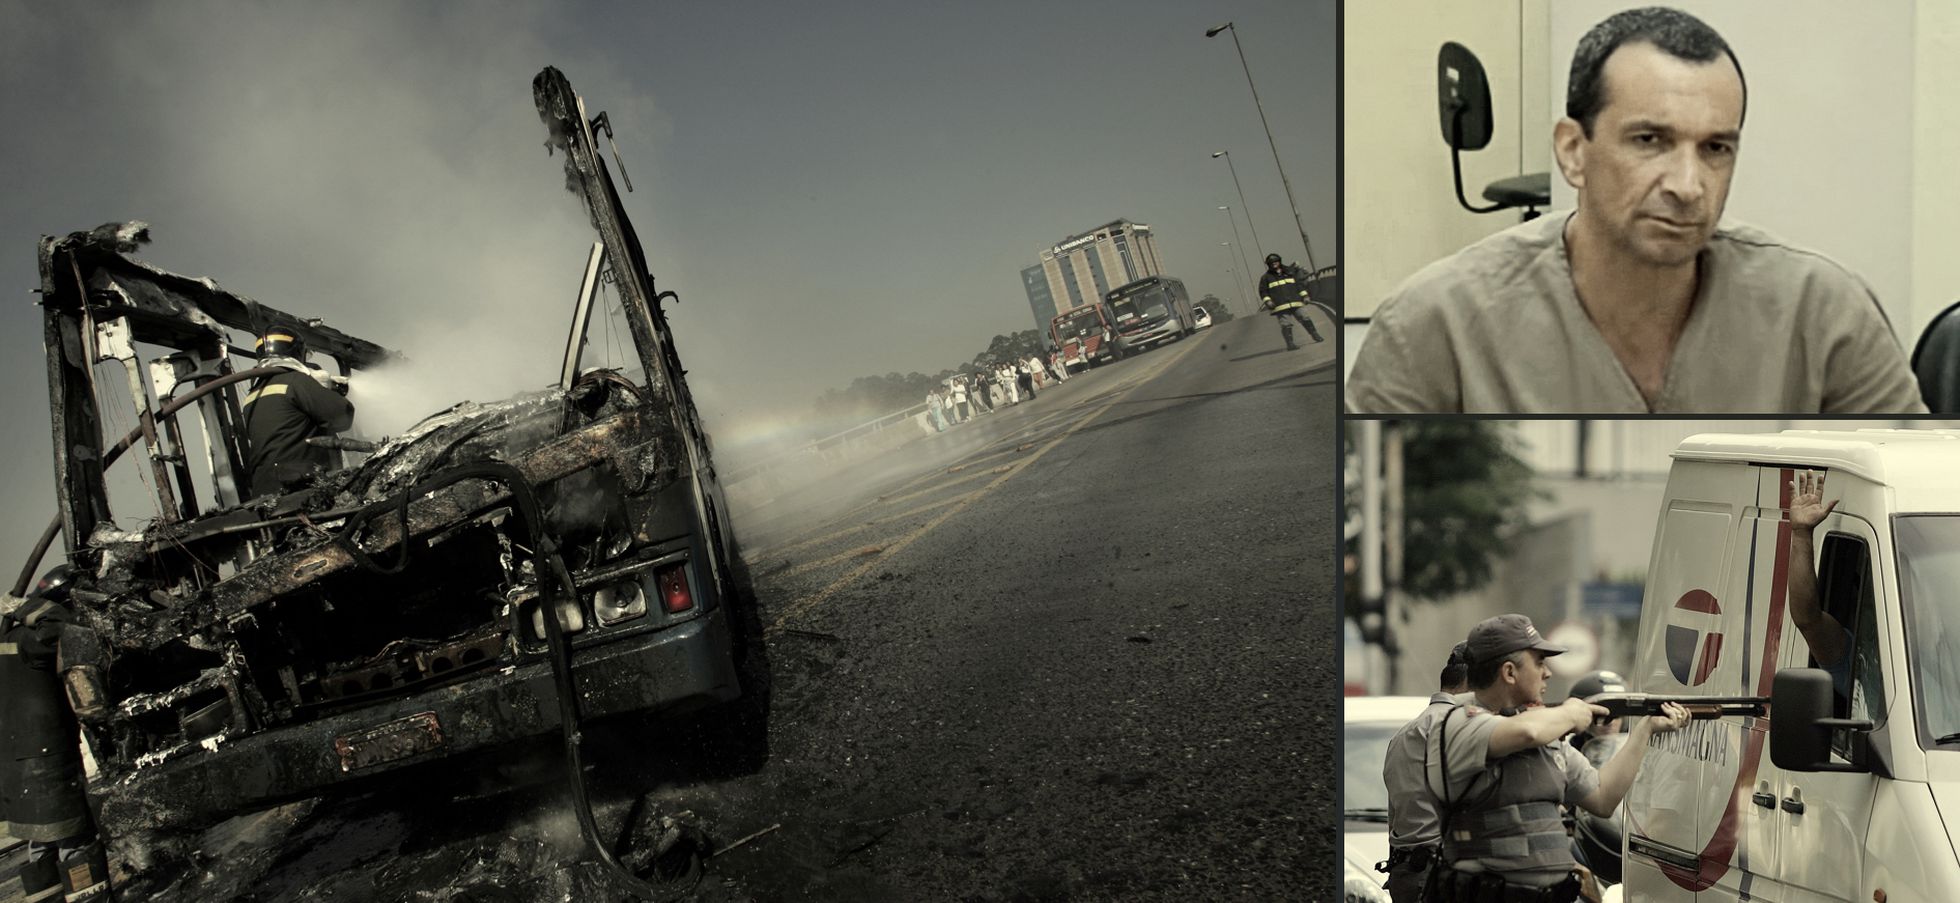 À esquerda, um ônibus queimado durante a onda de ataques do PCC em São Paulo, em maio de 2006, quando 560 pessoas em duas semanas. À direita, acima, Marcos Williams Herbas Camacho, o ‘Marcola’, chefe que simboliza a facção, durante um julgamento e, abaixo, um policial mira um homem durante os ataques de 2006.  / MAURICIO LIMA (AFP) / ROBSON FERNANDJES (AFP)